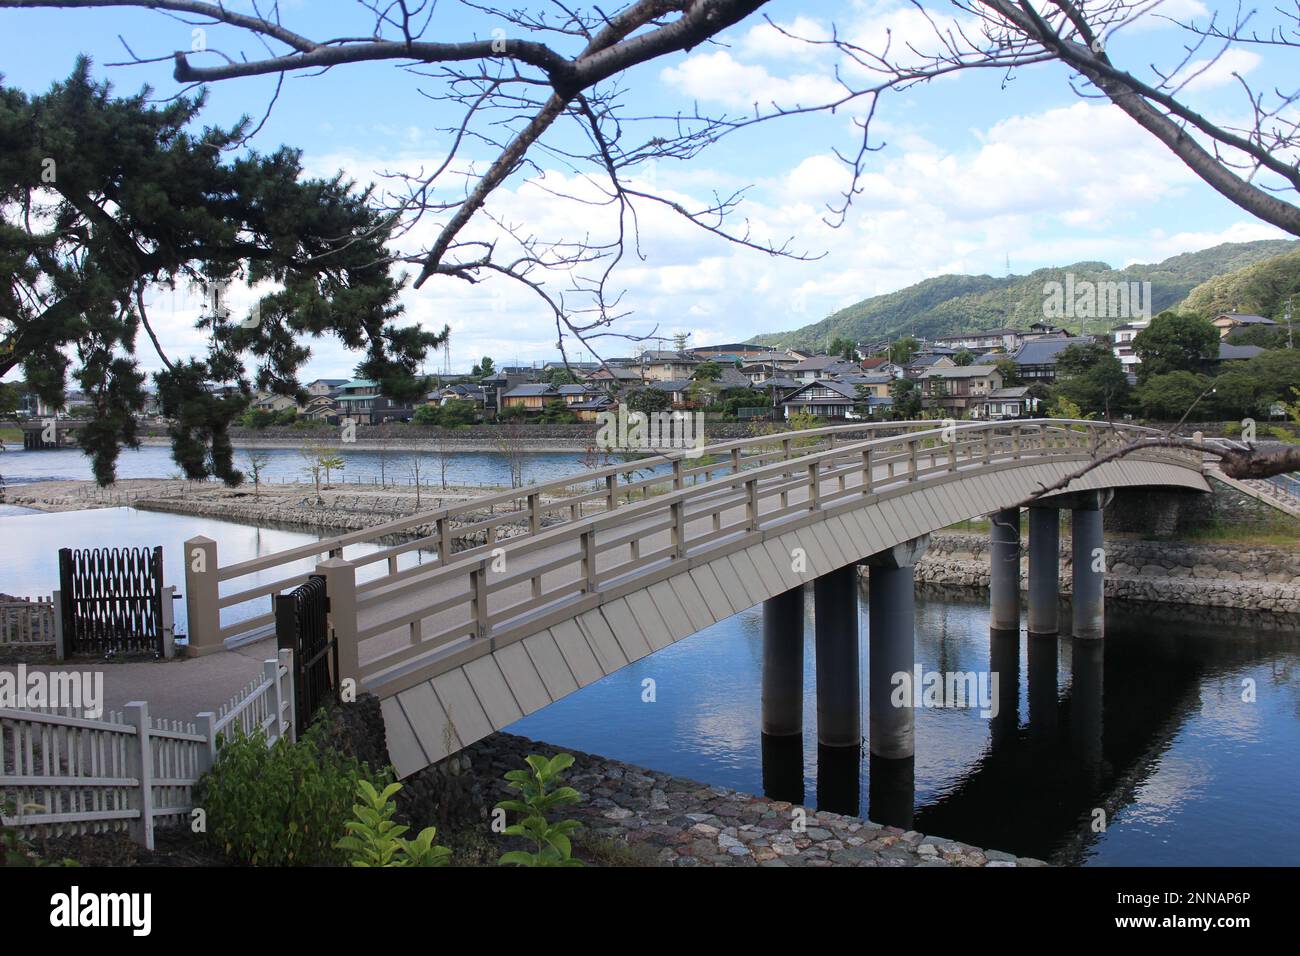 A bridge over Uji river in Kyoto, Japan Stock Photo